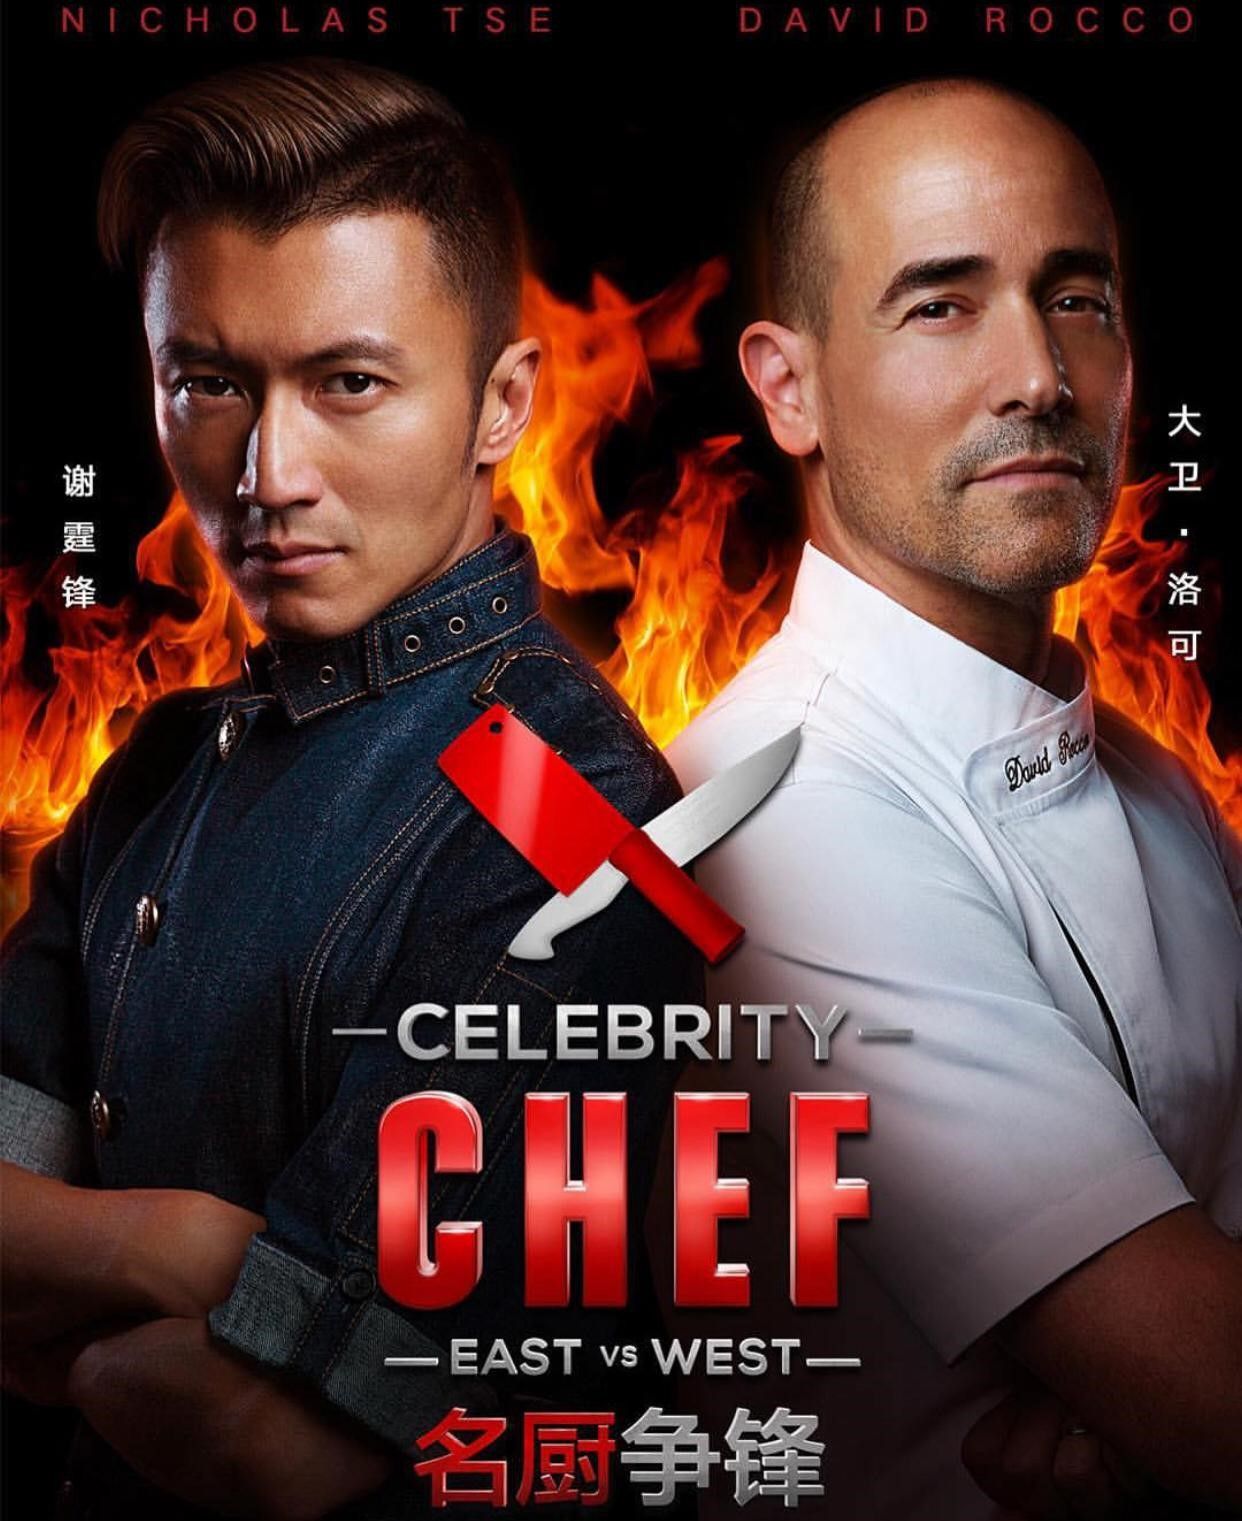 Hình ảnh của David Rocco xuất hiện tại chương trình ẩm thực Celebrity Chef.